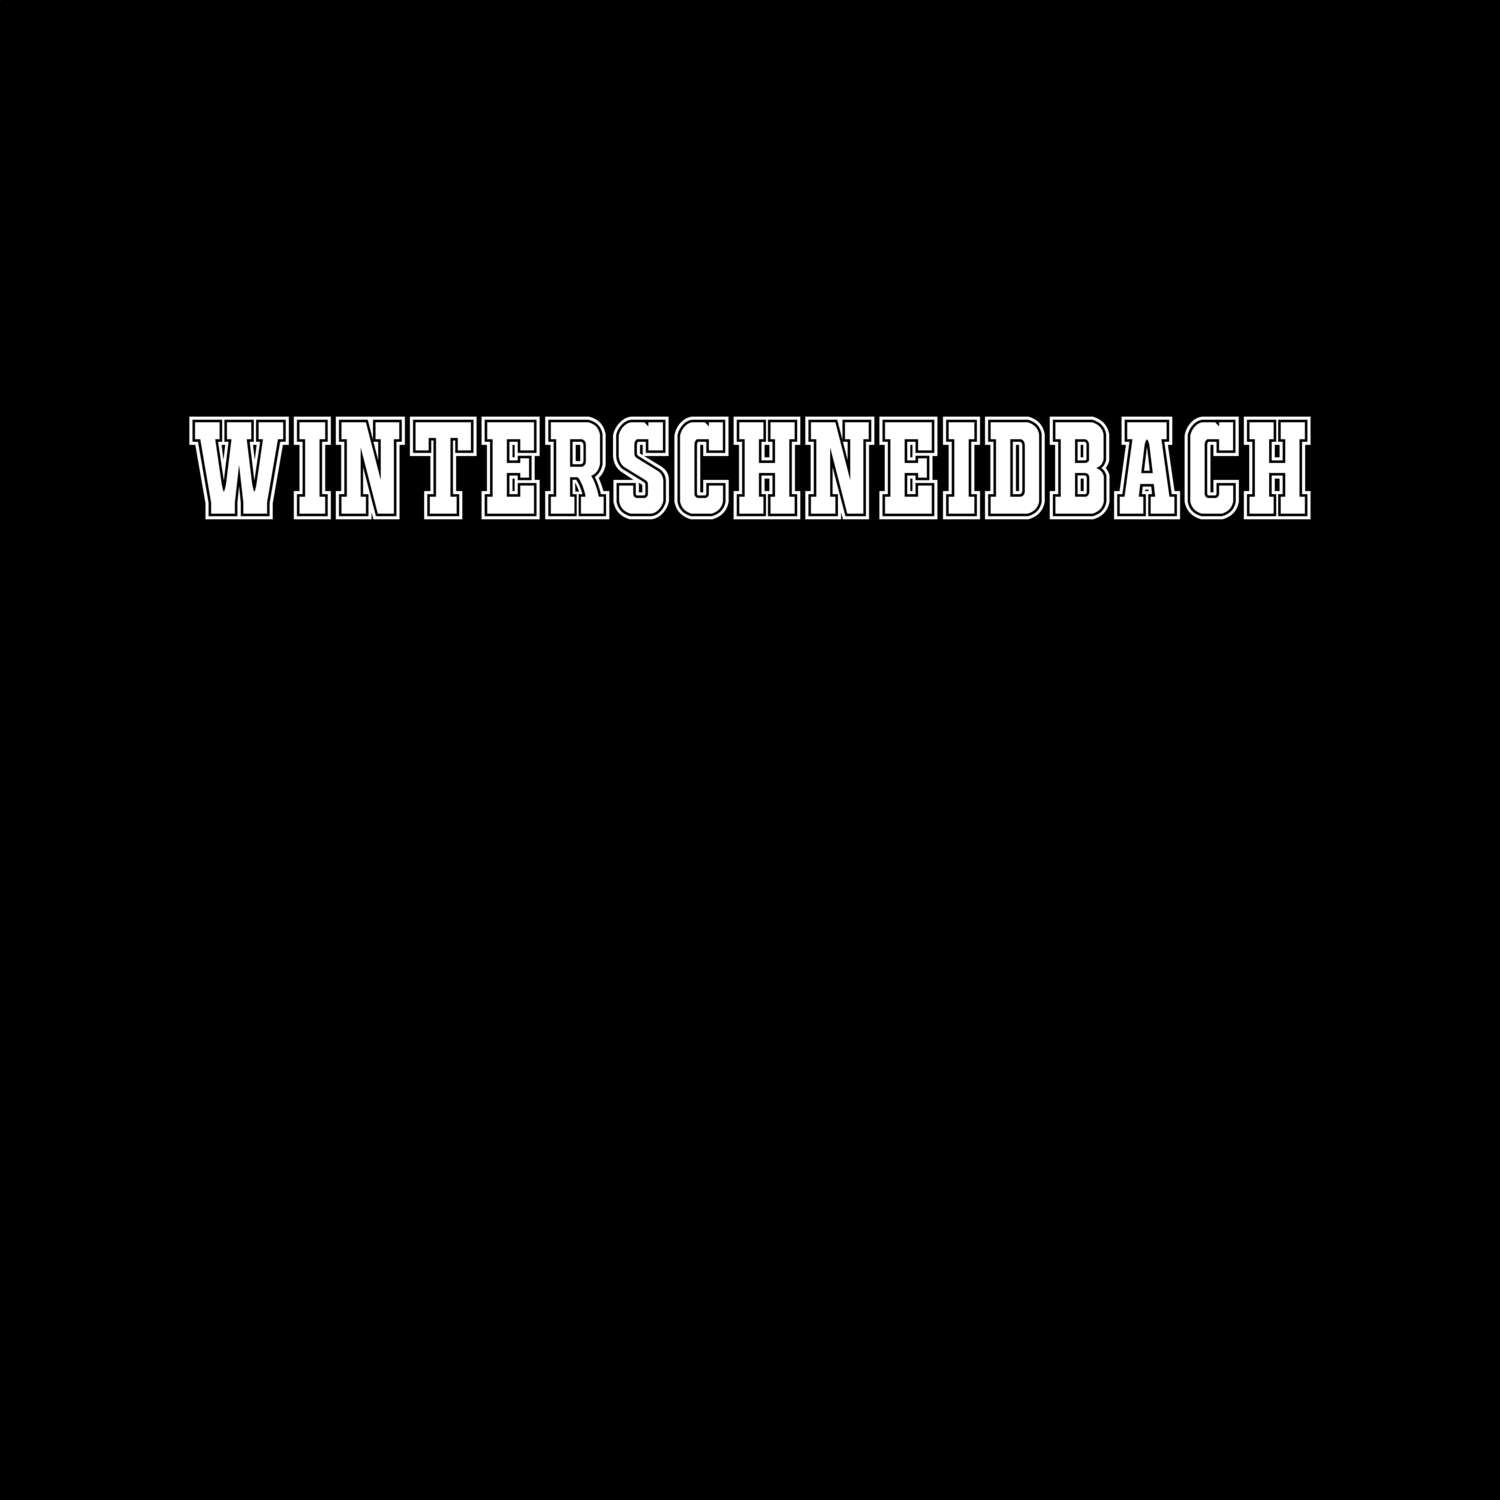 Winterschneidbach T-Shirt »Classic«